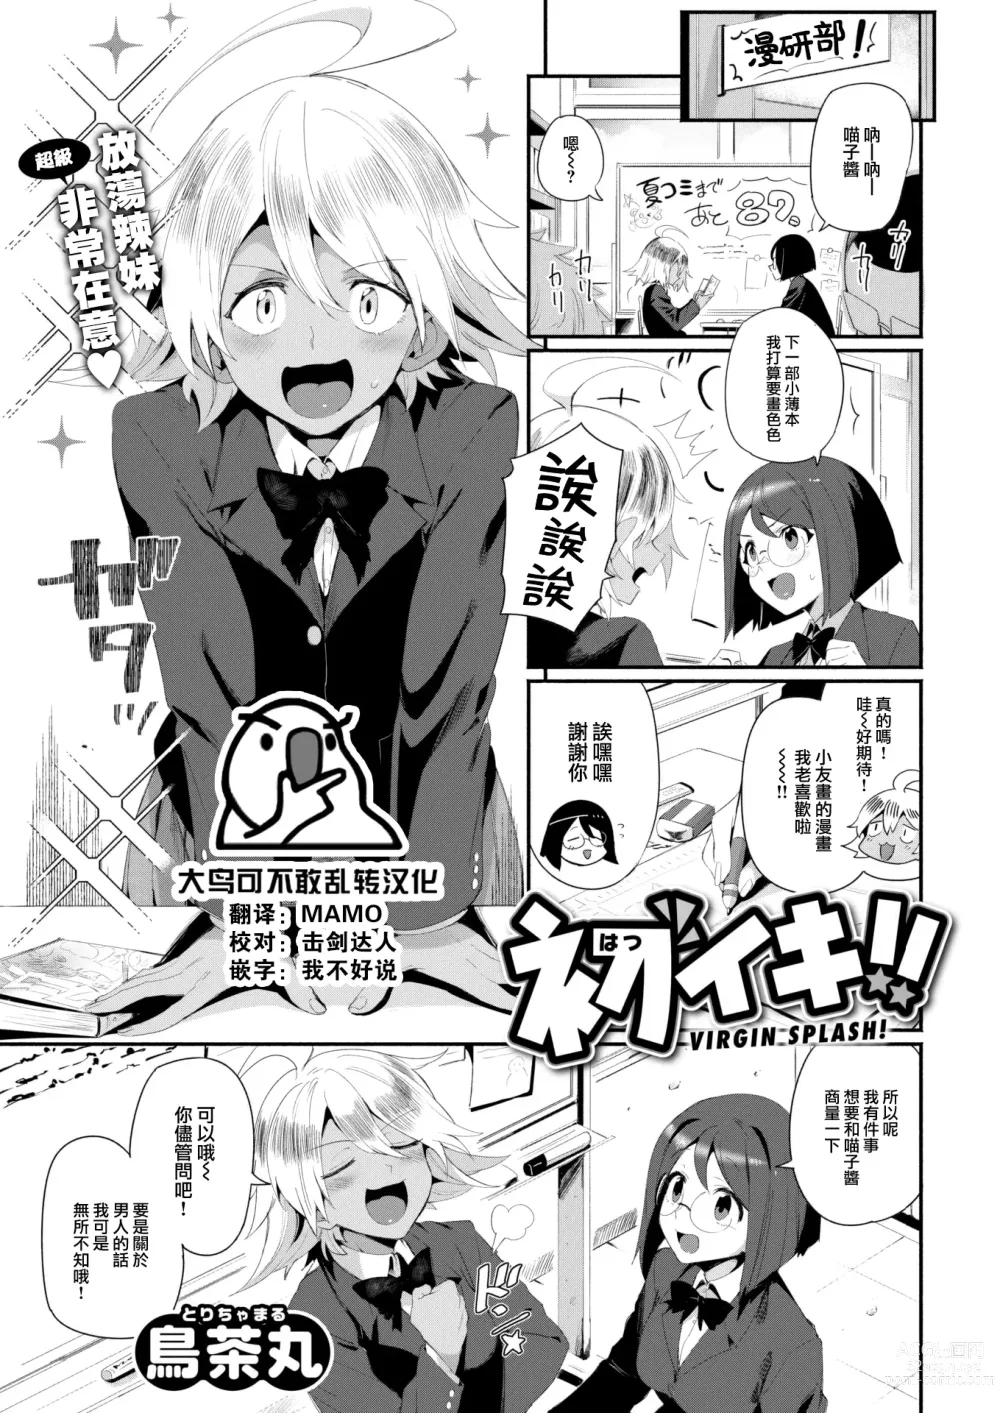 Page 1 of manga Hatsuiki!! - Virgin Splash!